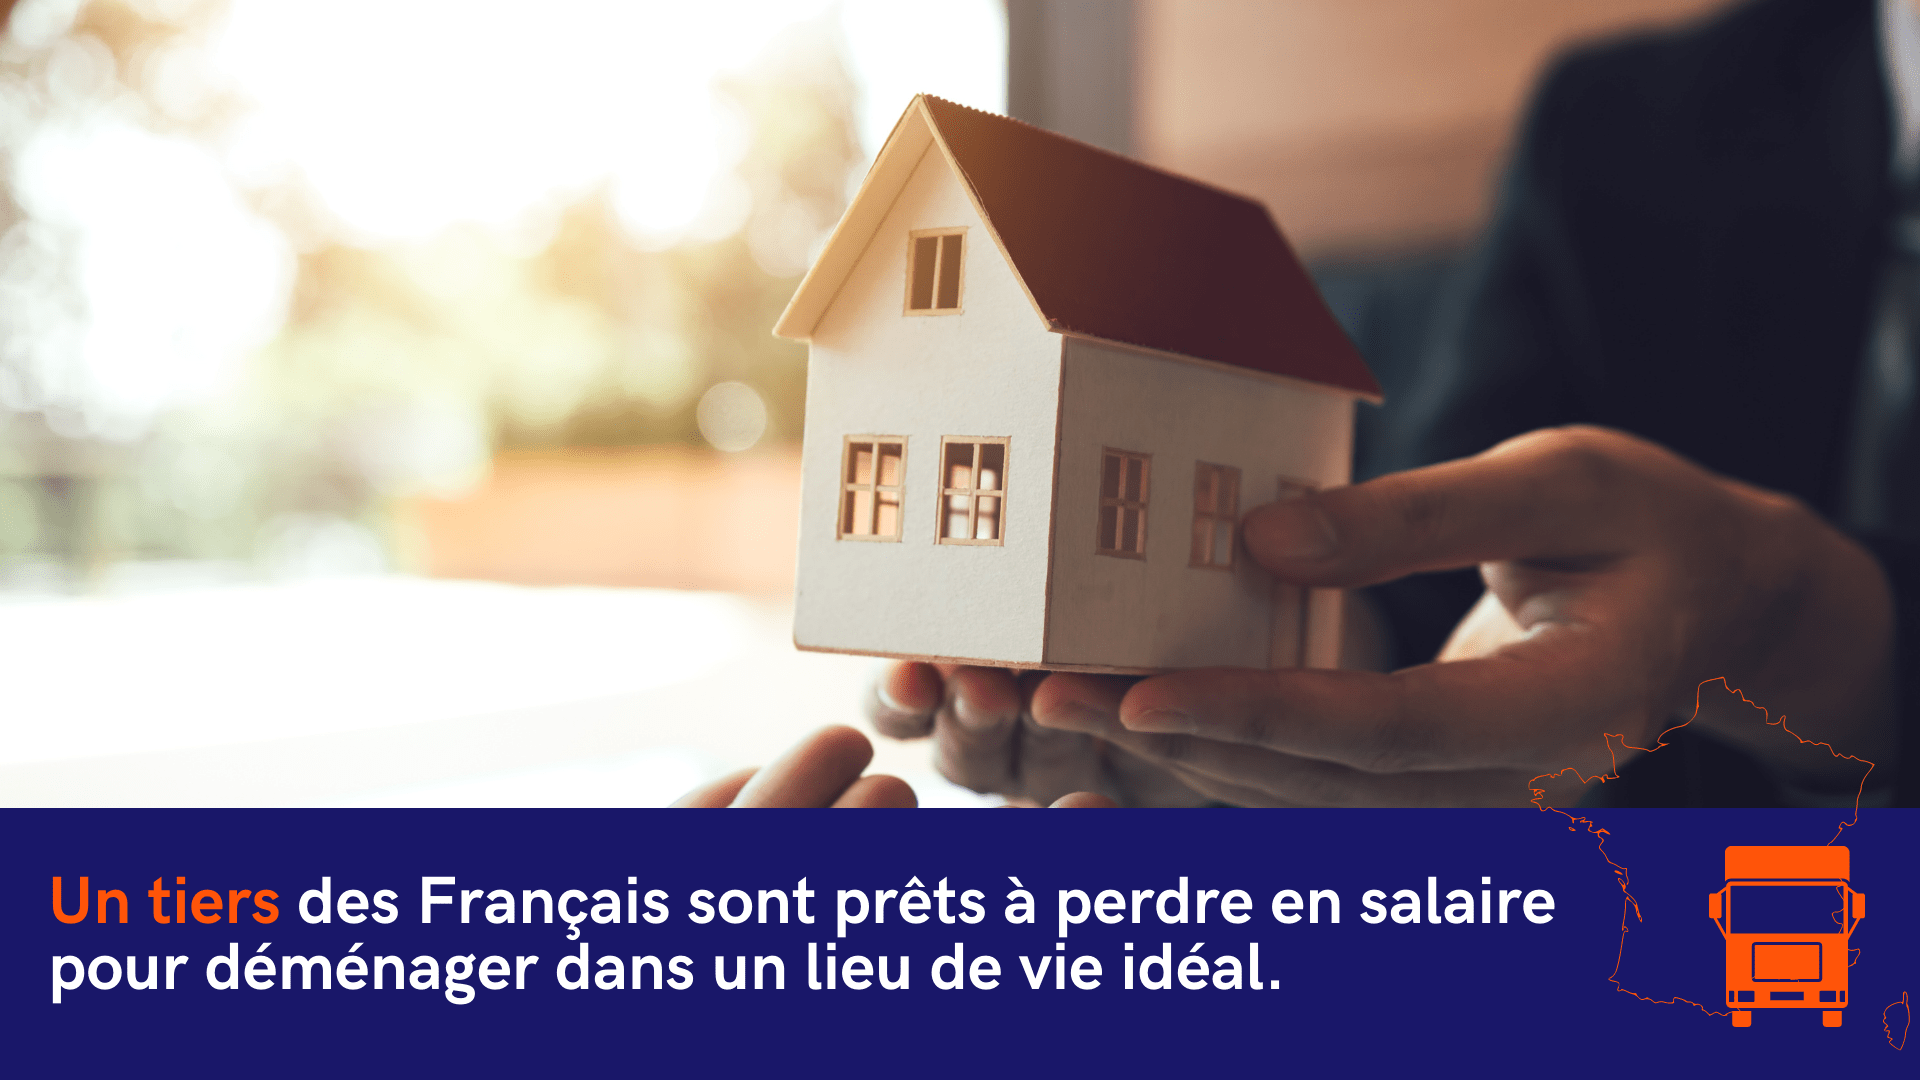 Enquête : Les Français rêvent de déménager dans un cadre de vie idéal quitte à sacrifier une partie de leur salaire